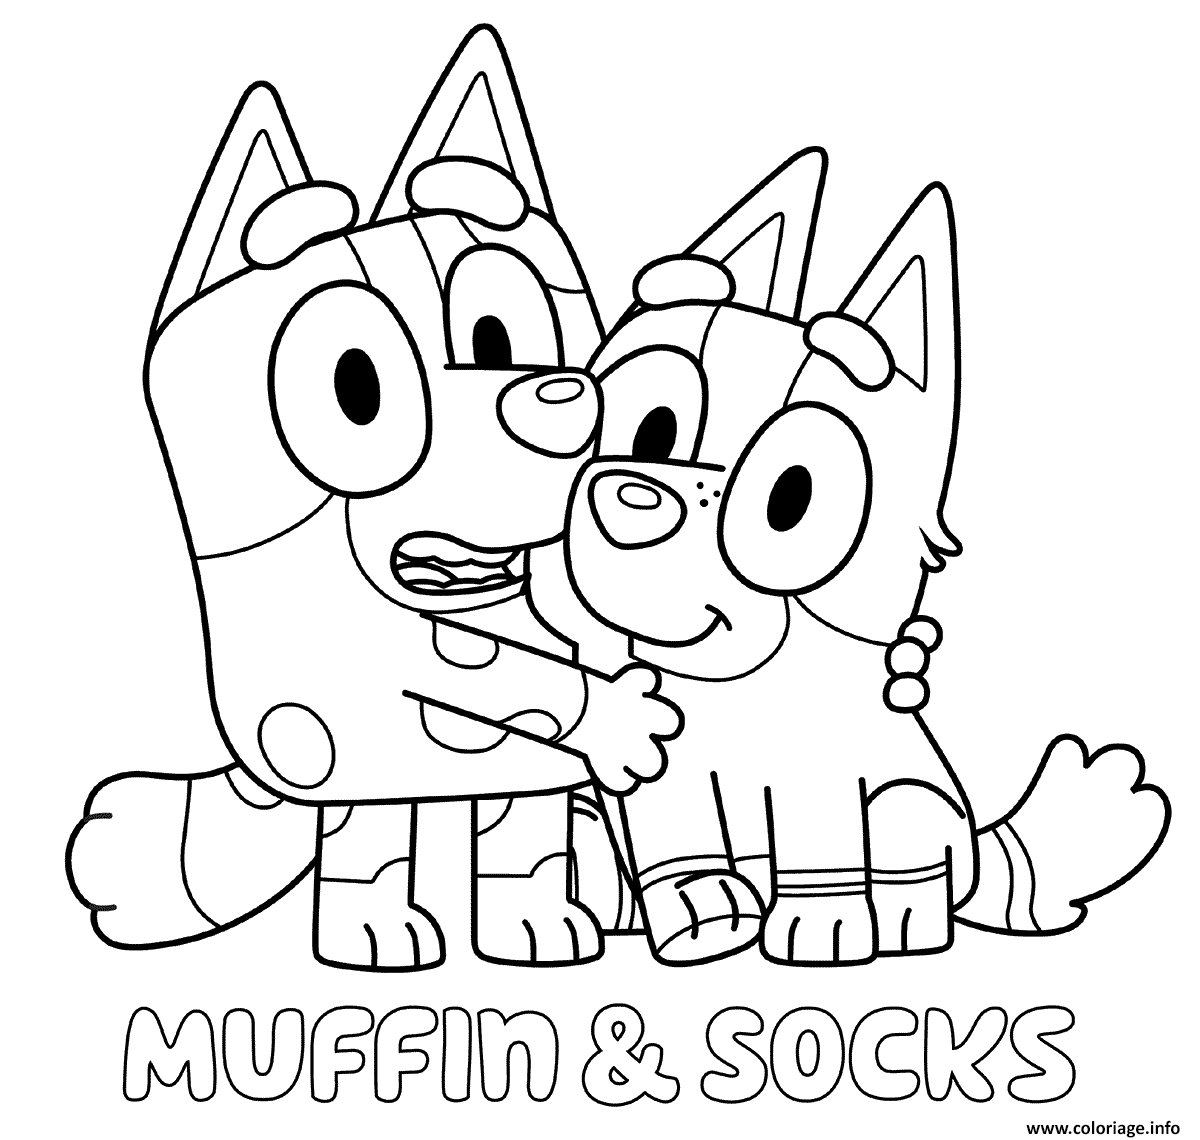 Dessin Muffin et Sockss Coloriage Gratuit à Imprimer